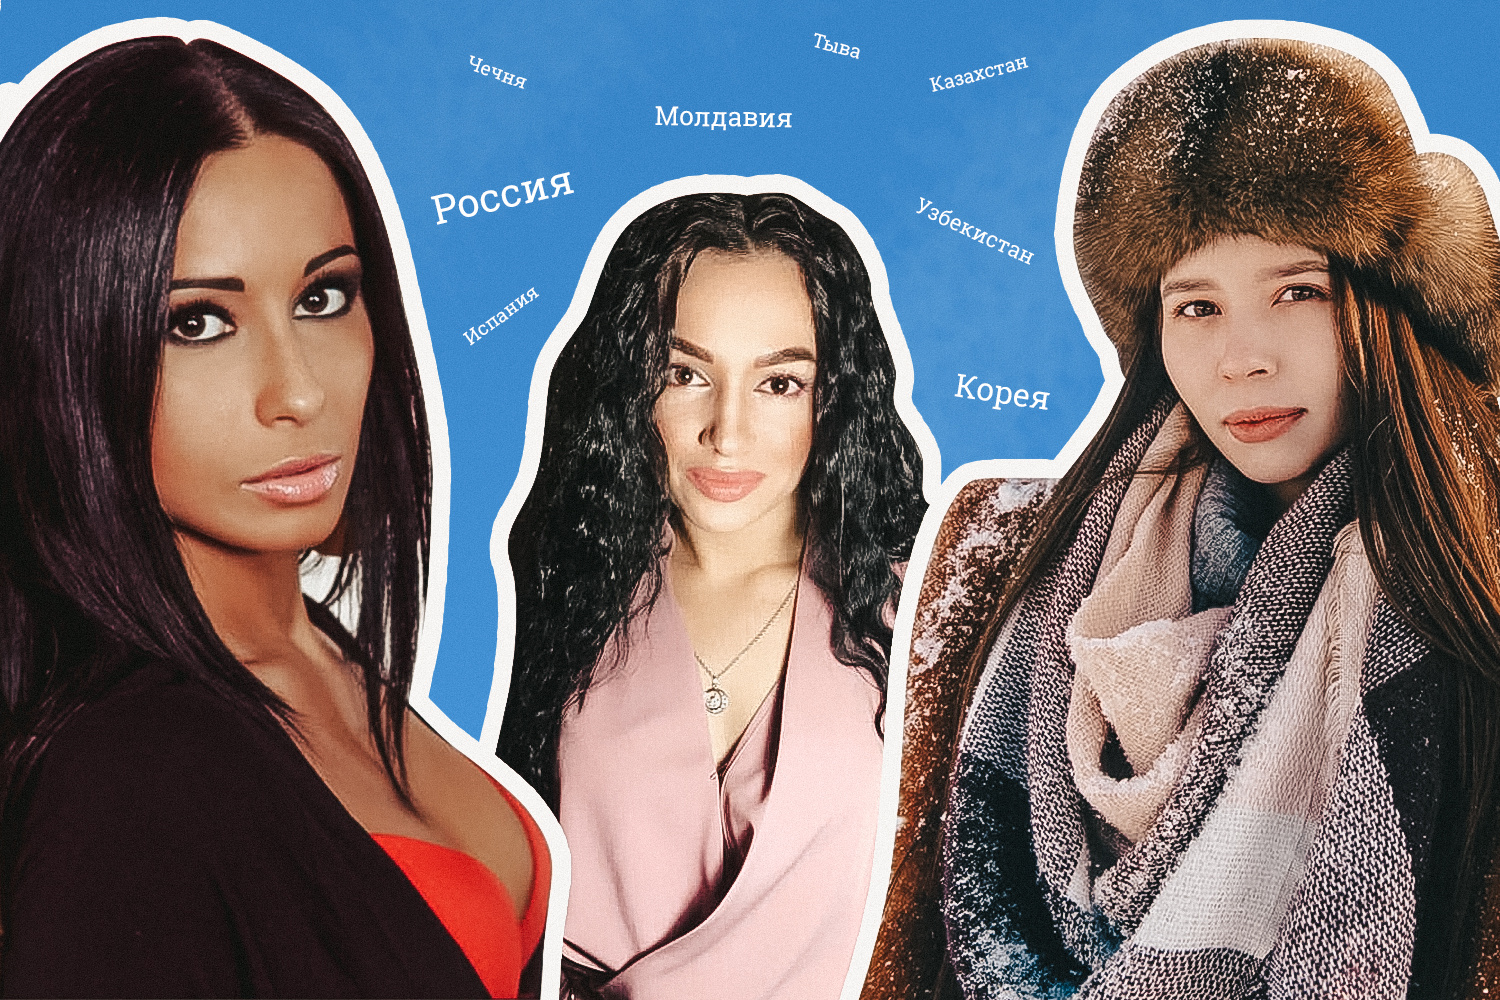 Как выглядят люди от родителей разных национальностей: фото 6 девушек от  смешанных браков - 7 марта 2020 - ufa1.ru